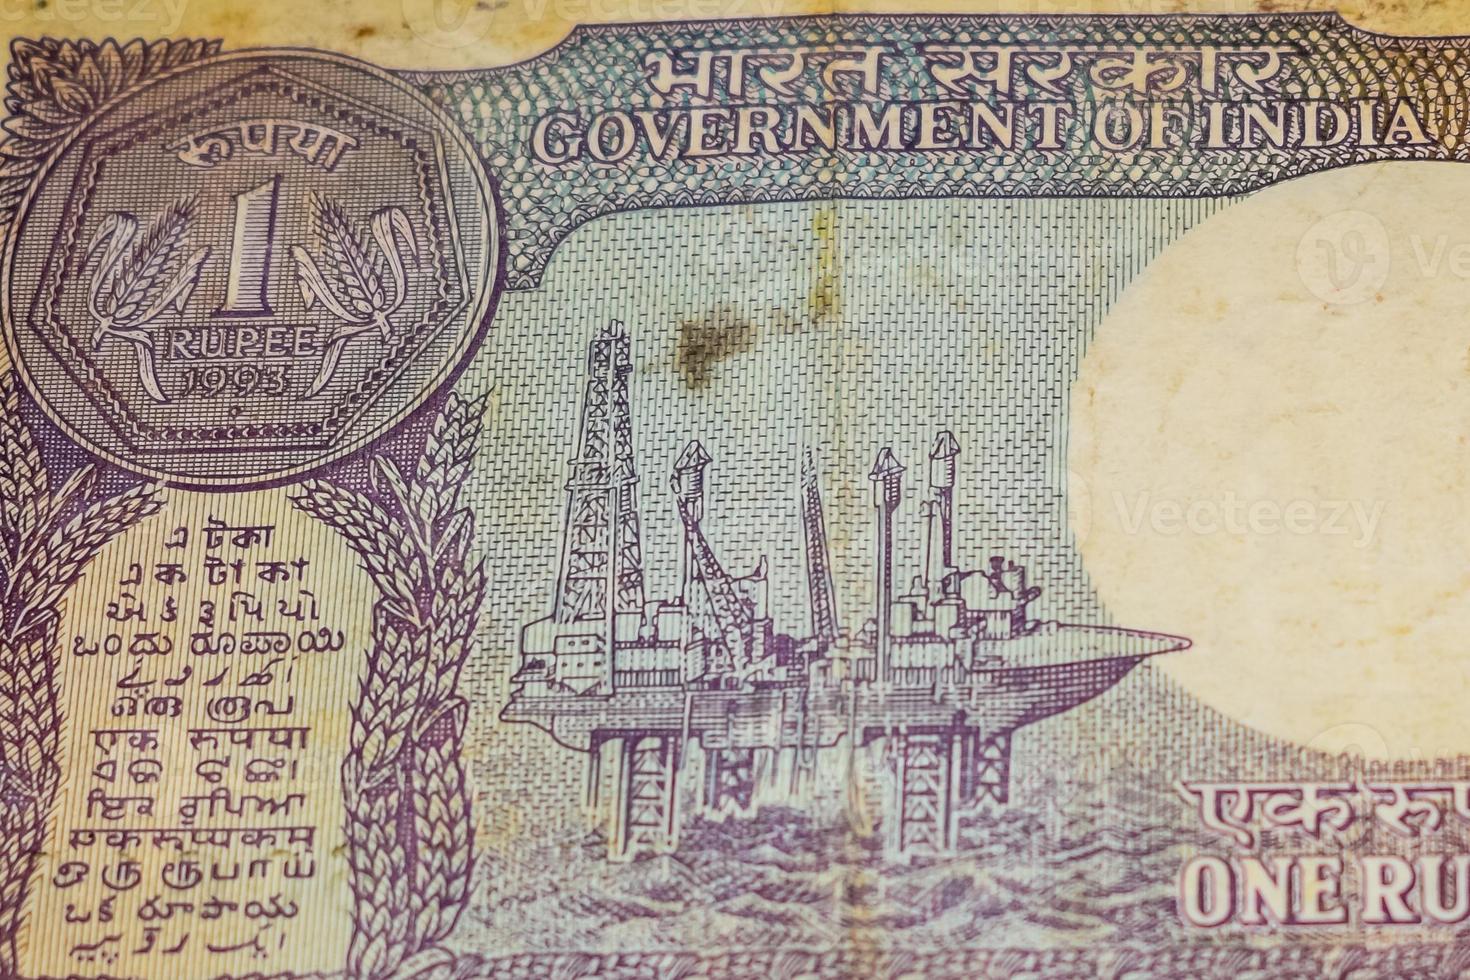 notas antigas de uma rupia combinadas na mesa, dinheiro da índia na mesa rotativa. notas antigas de moeda indiana em uma mesa rotativa, moeda indiana em cima da mesa foto